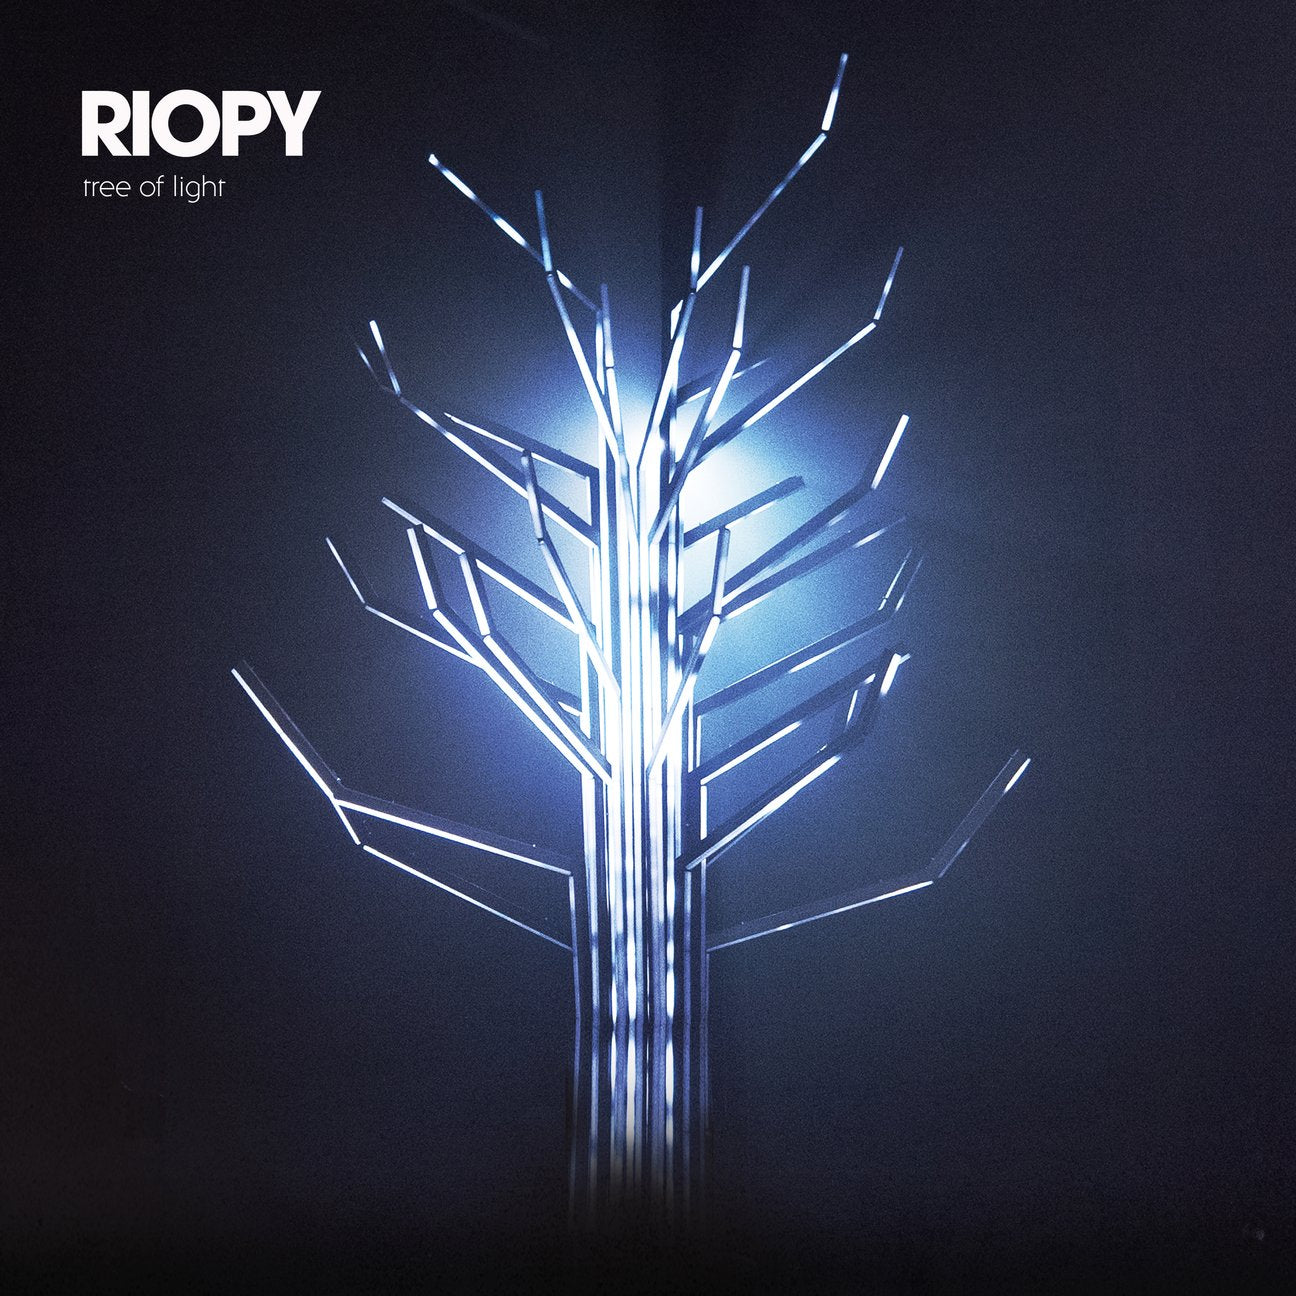 Ukiyo sheet music from RIOPY's Tree of Light album